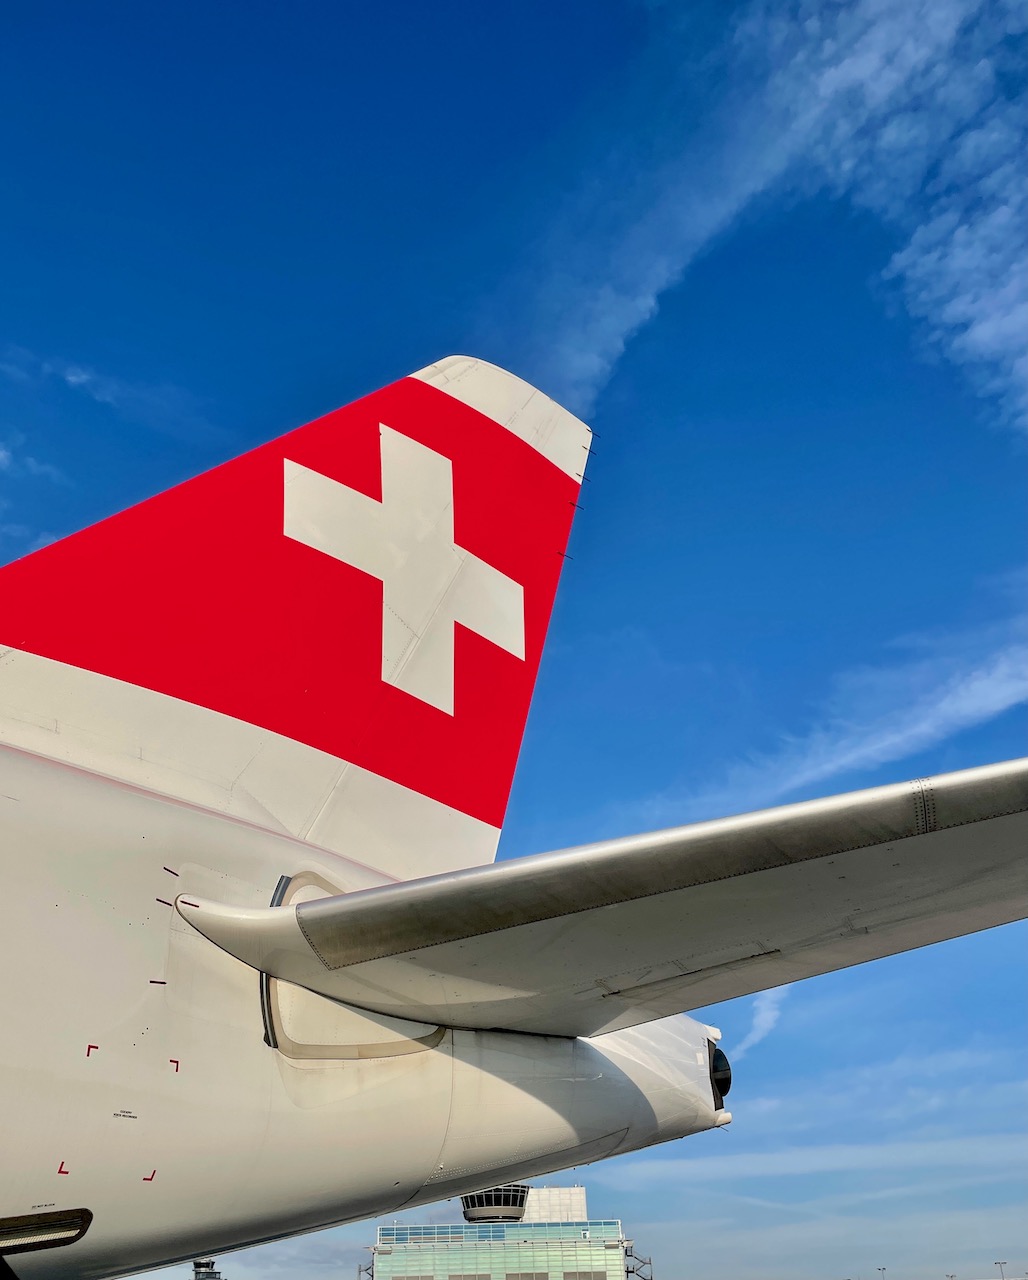 Swiss flight from Zurich to Chicago